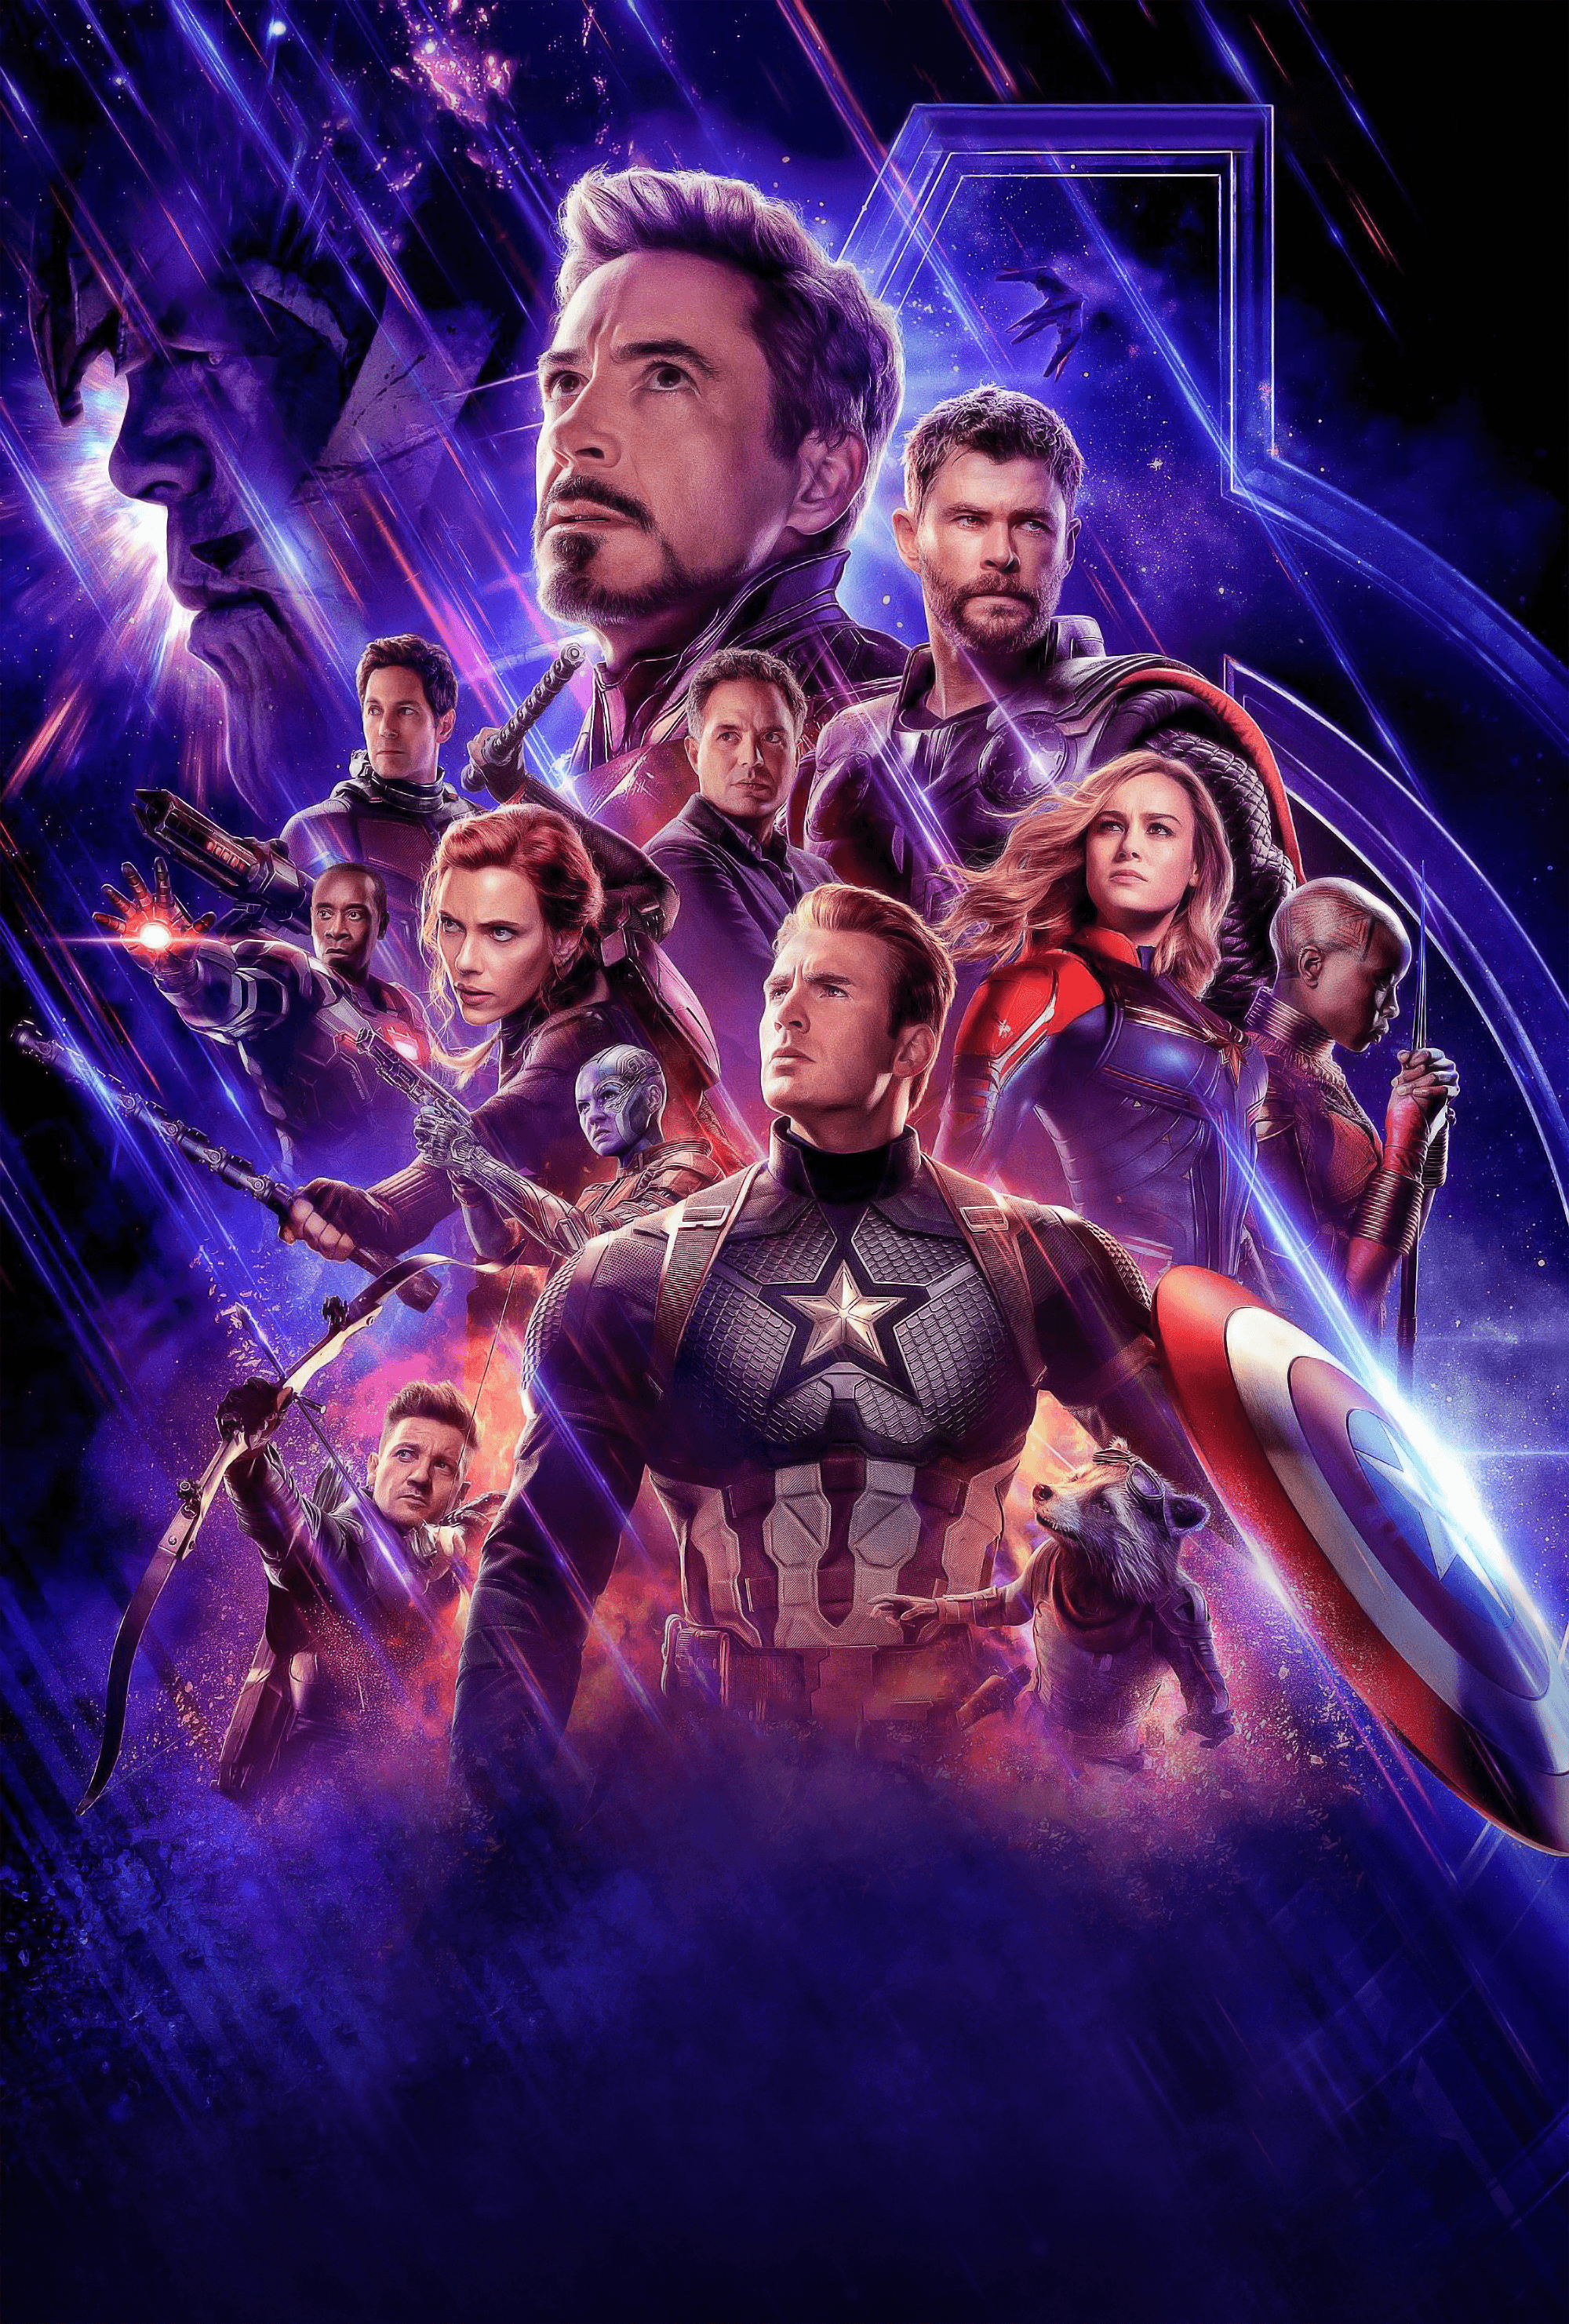 Avengers Endgame poster wallpaper